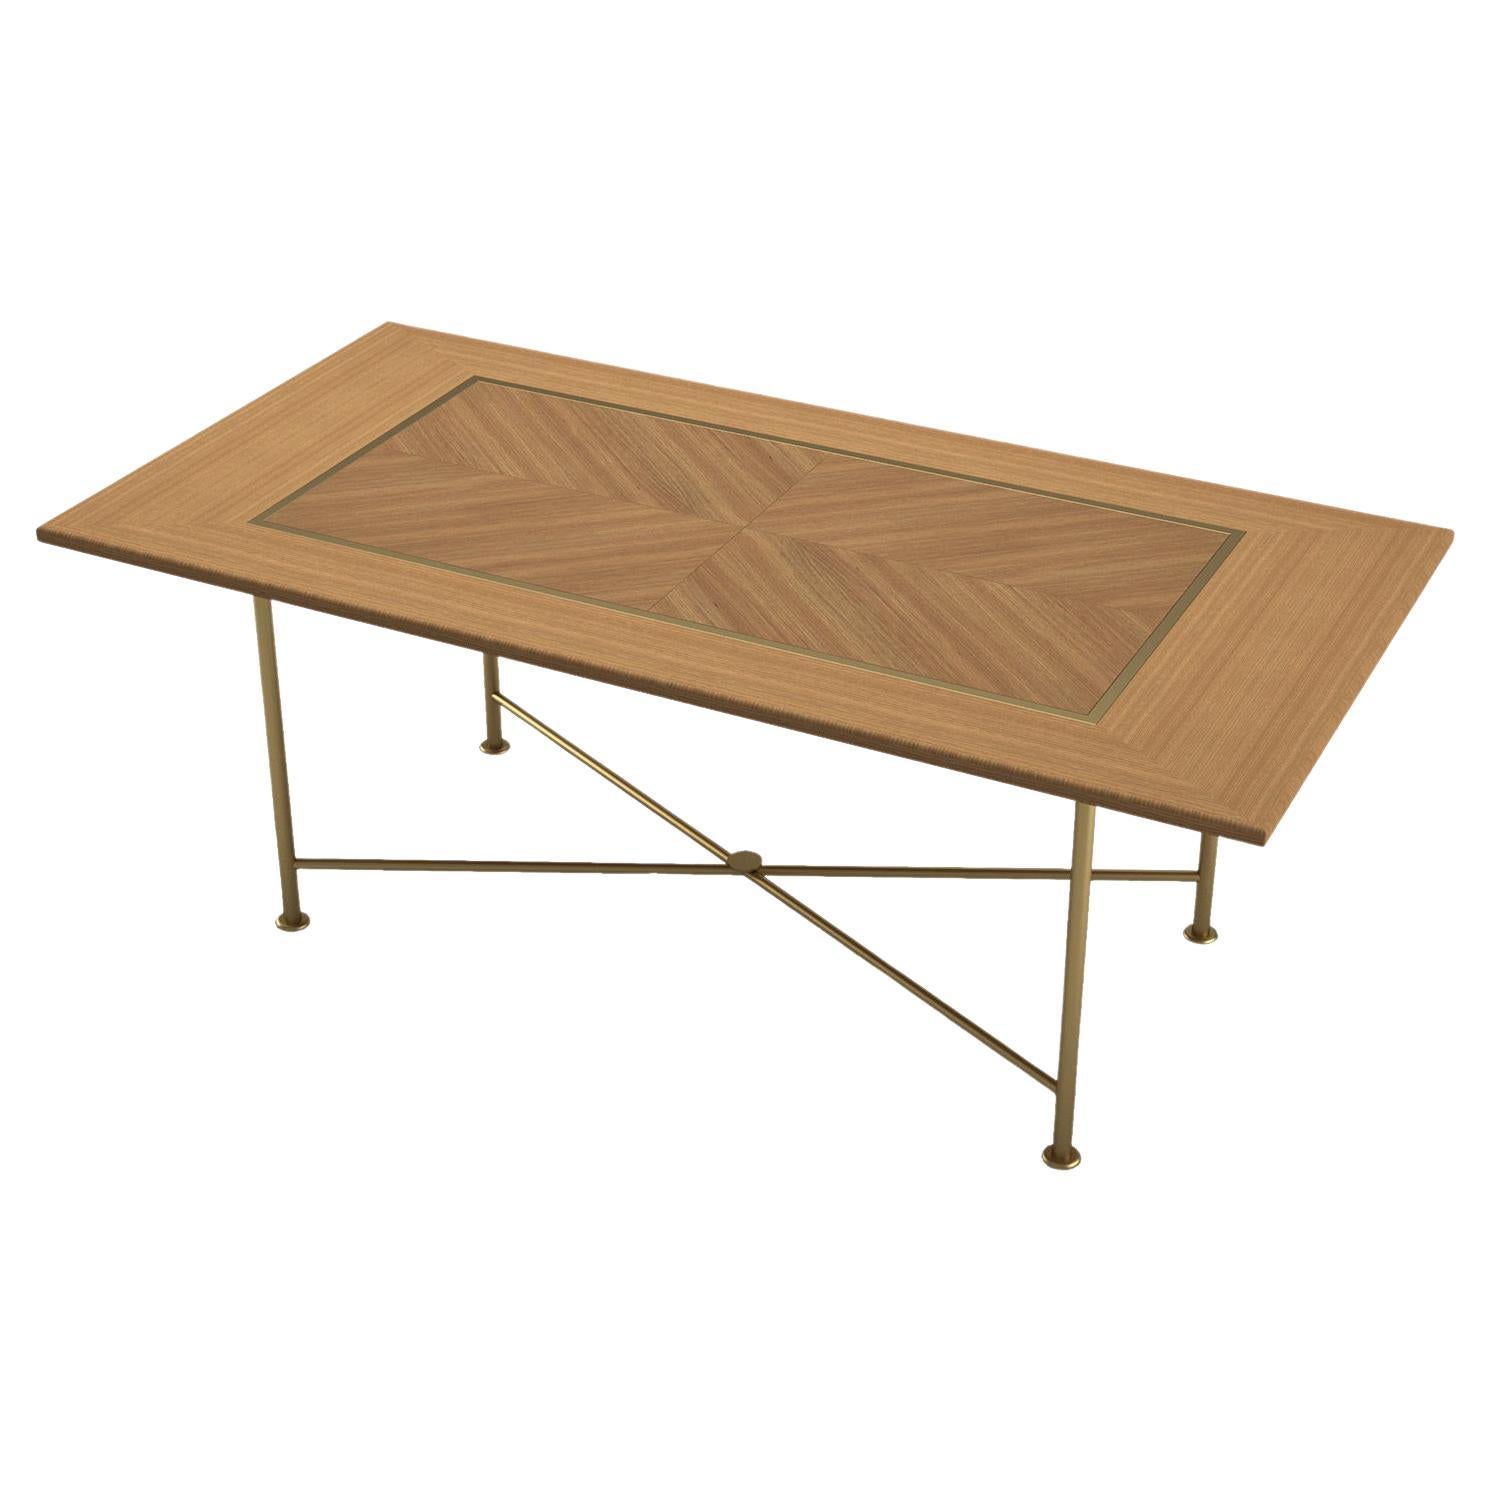 Avec ses grandes dimensions et sa table en chêne américain clair, la table cadre apporte de la Nature à votre salle à manger avec toute sa durabilité pour que vous puissiez profiter de vos repas plus confortablement.

Mesures : longueur : 86.6'' /